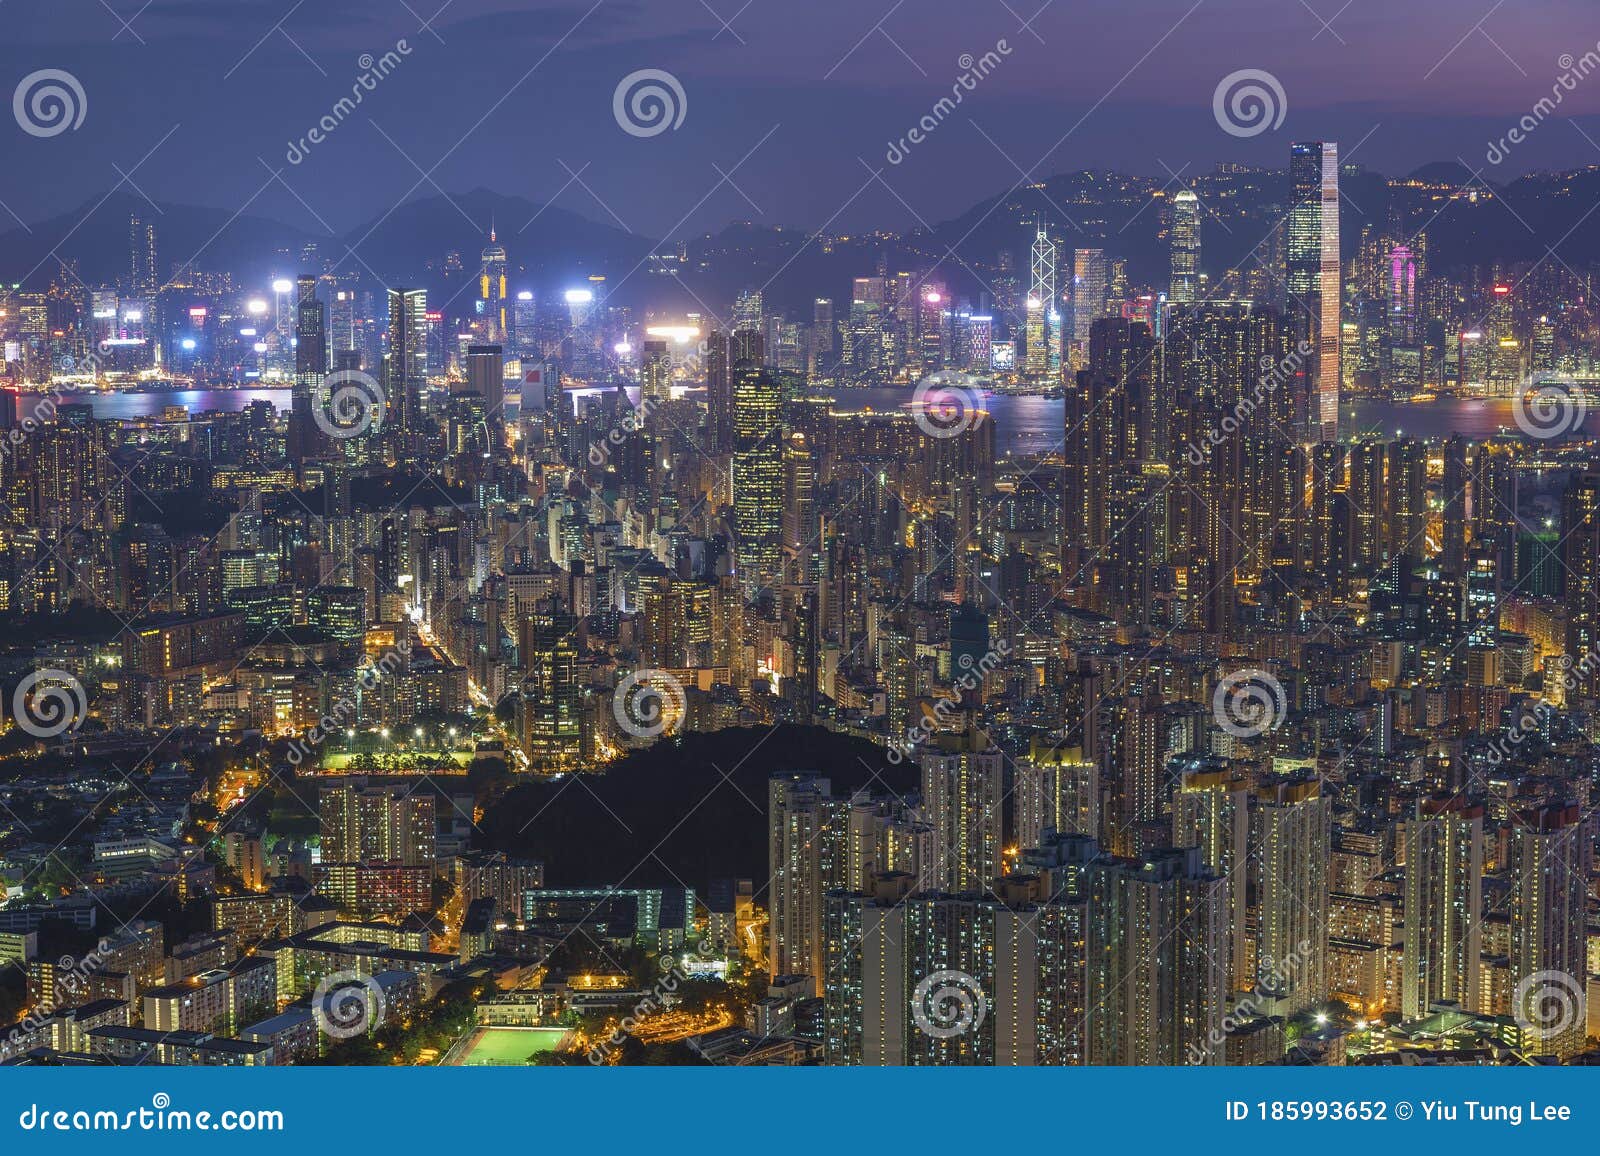 Aerial View of Hong Kong City at Dusk Stock Photo - Image of metropolis ...